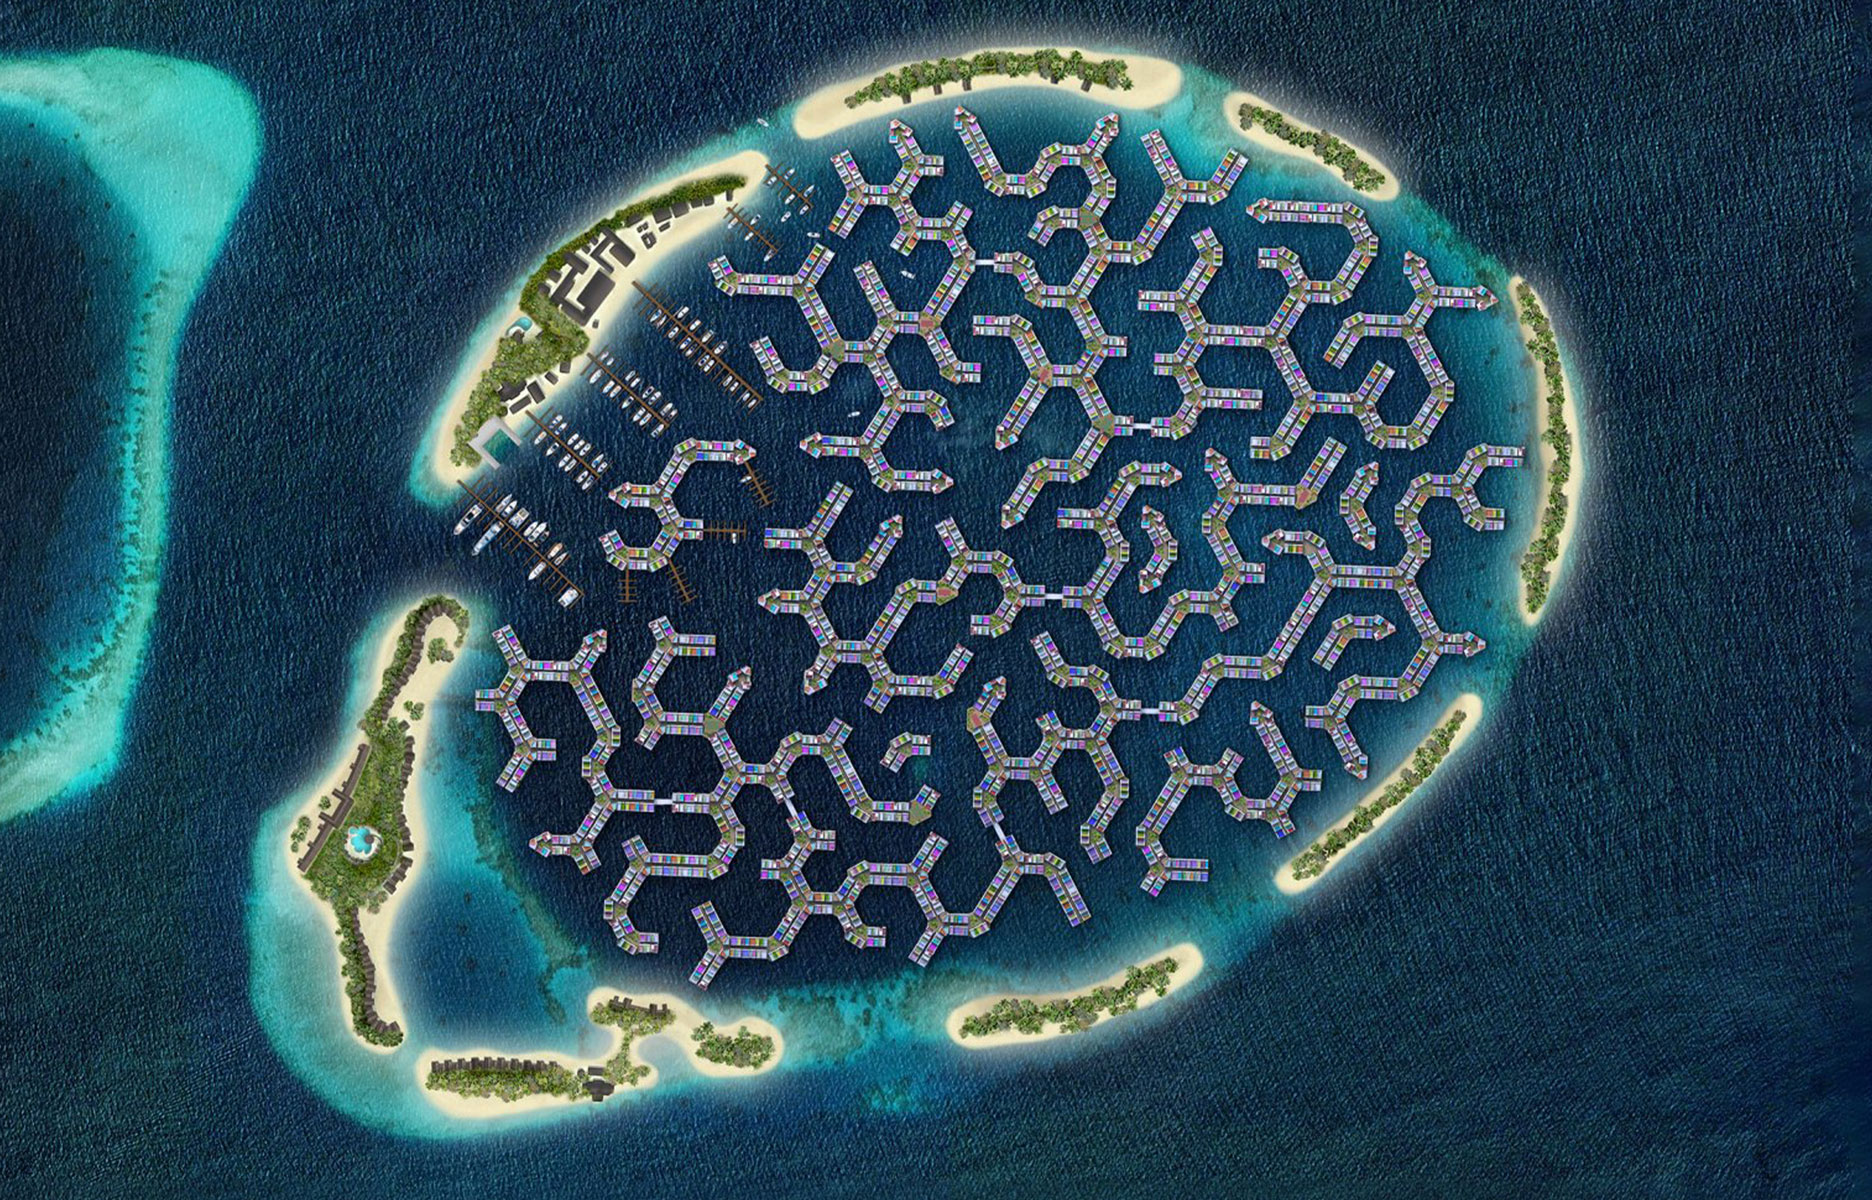 maldives-ville-flottante-1-56